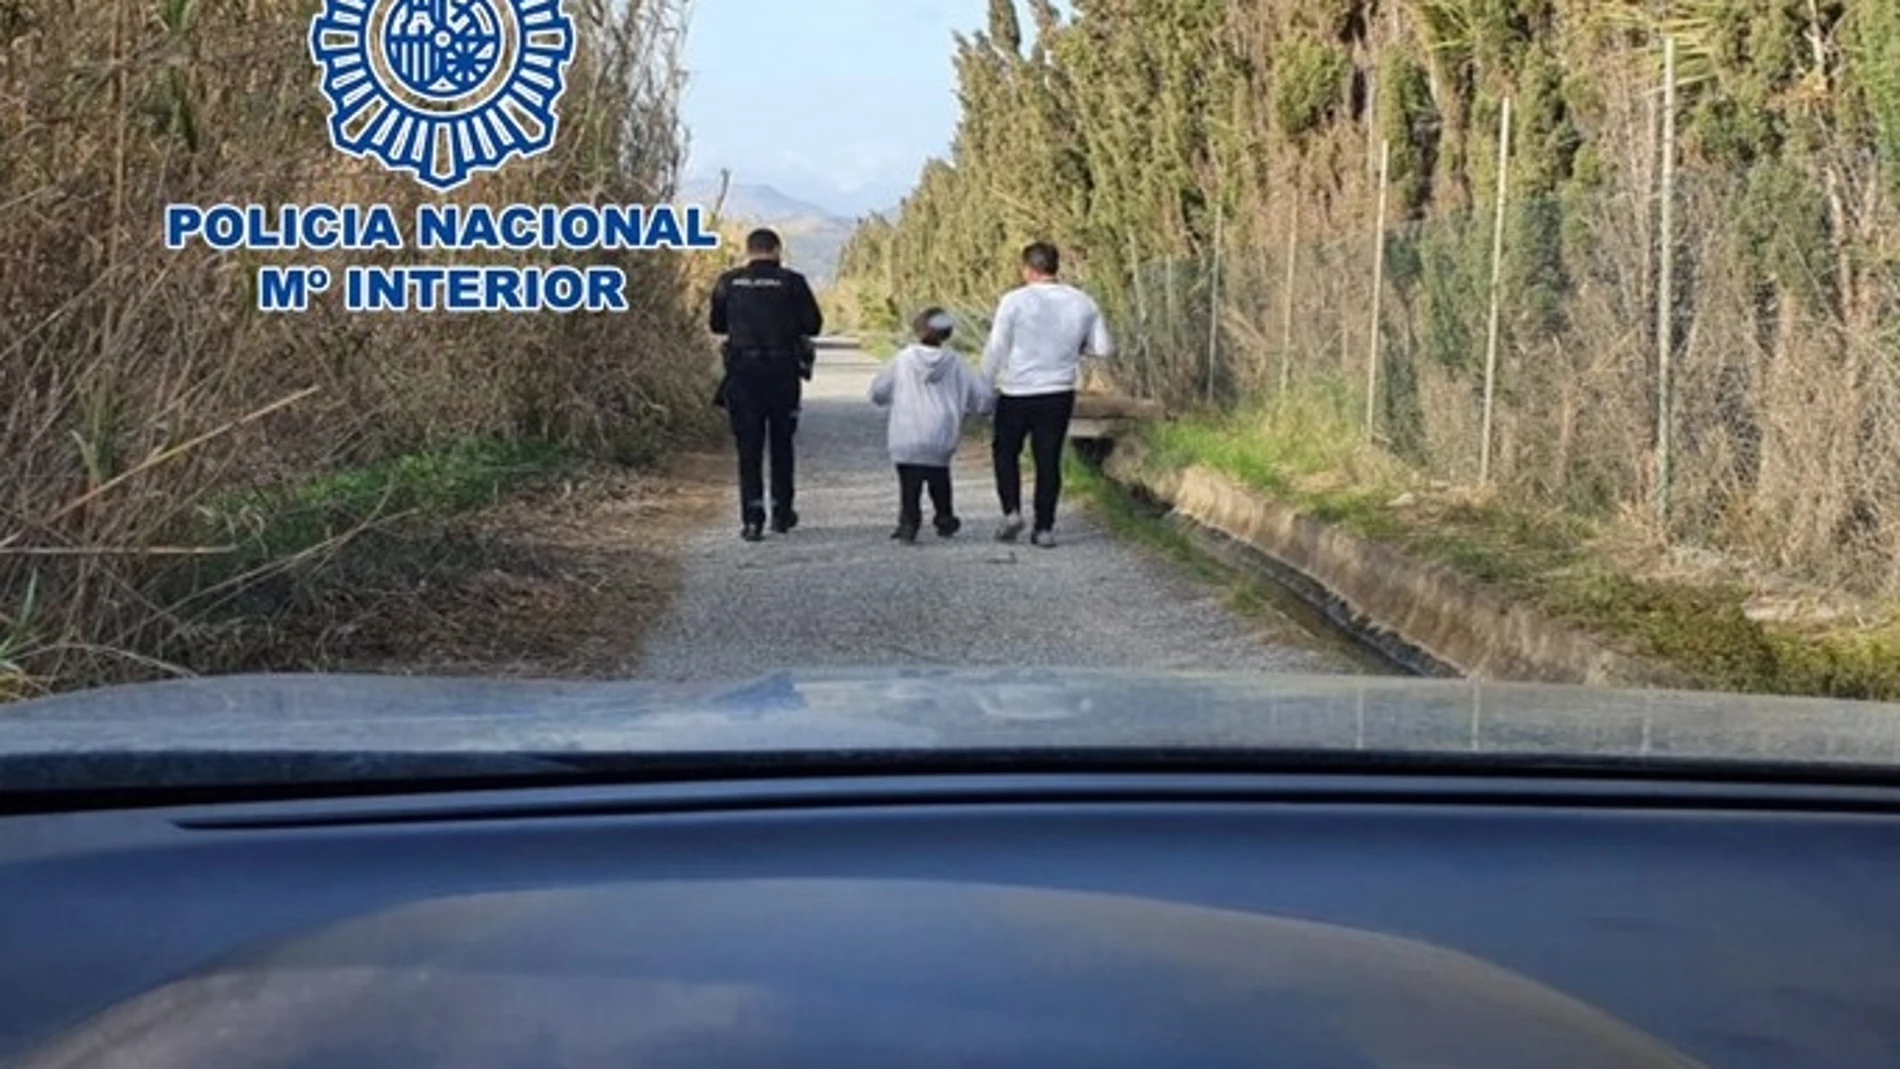 La Policía Nacional localizó a un niño que había desaparecido en Motril. POLICÍA NACIONAL